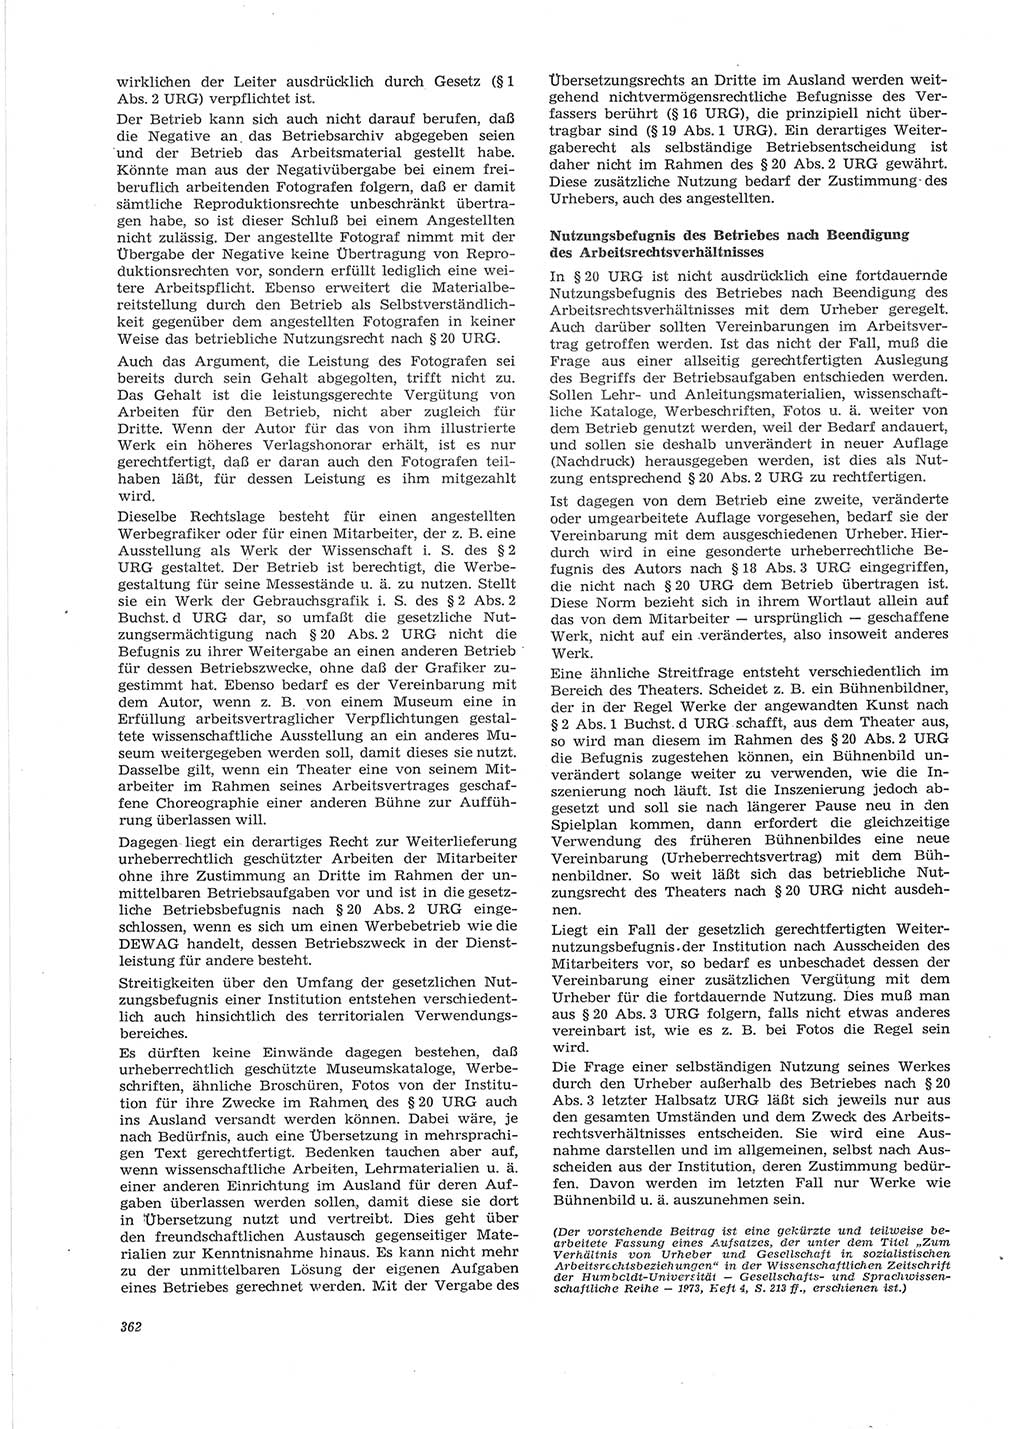 Neue Justiz (NJ), Zeitschrift für Recht und Rechtswissenschaft [Deutsche Demokratische Republik (DDR)], 28. Jahrgang 1974, Seite 362 (NJ DDR 1974, S. 362)